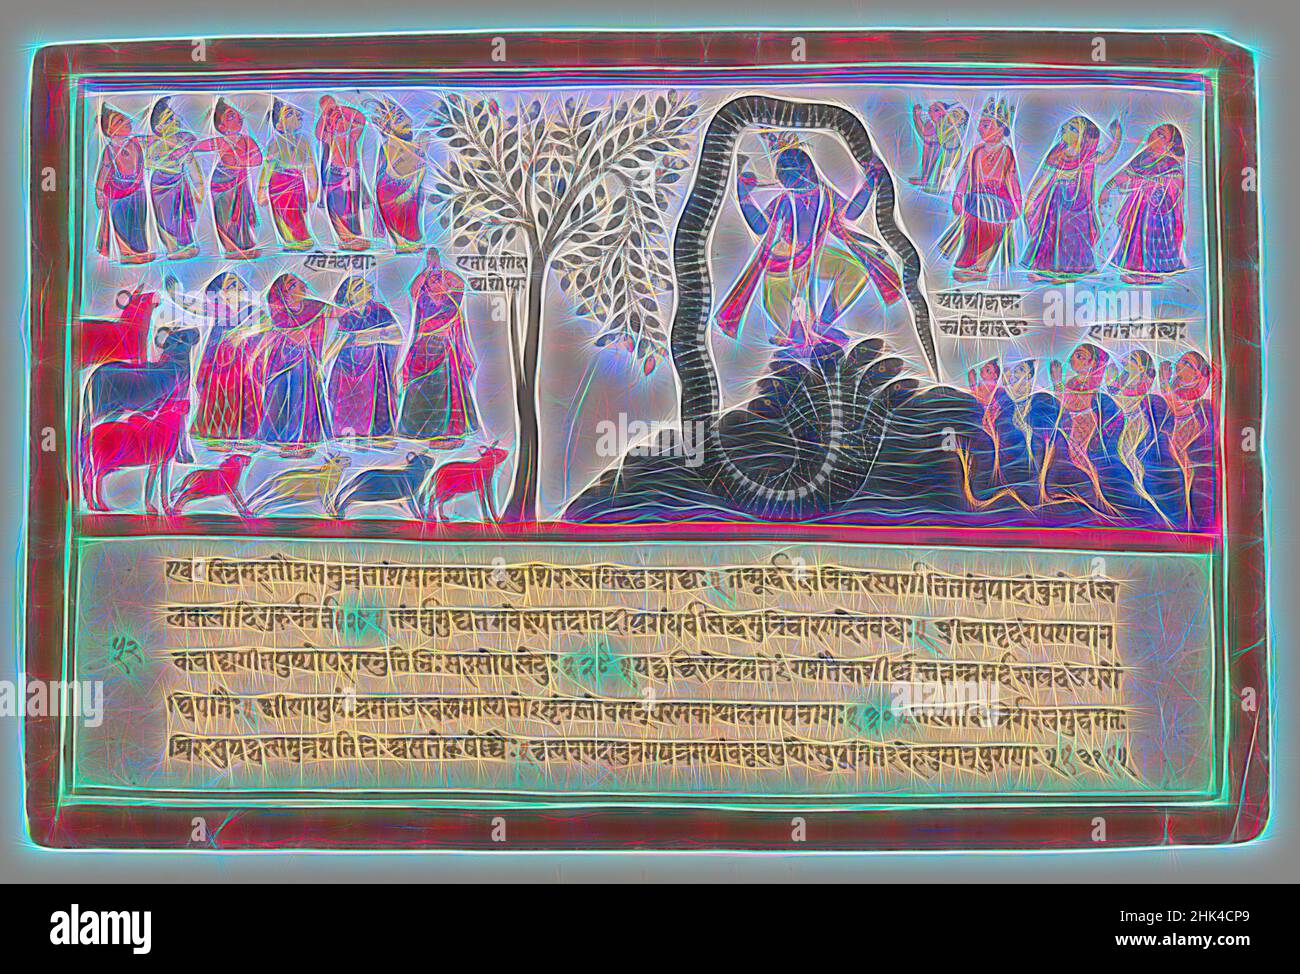 Inspiré par Krishna conquiert le serpent Kaliya, page d'une série de Bhagavata Purana dispersée, Indien, aquarelle opaque et or sur papier, Odisha, Orissa, Inde, CA. 1775, feuille: 9 3/4 x 14 5/8 po., 24,8 x 37,1 cm, Bhagavata Purana, vaches, danse, Or, Gopis, Herd, Horn, Kaliya, Krishna, Nagas, repensé par Artotop. L'art classique réinventé avec une touche moderne. Conception de lumière chaleureuse et gaie, de luminosité et de rayonnement de lumière. La photographie s'inspire du surréalisme et du futurisme, embrassant l'énergie dynamique de la technologie moderne, du mouvement, de la vitesse et révolutionne la culture Banque D'Images